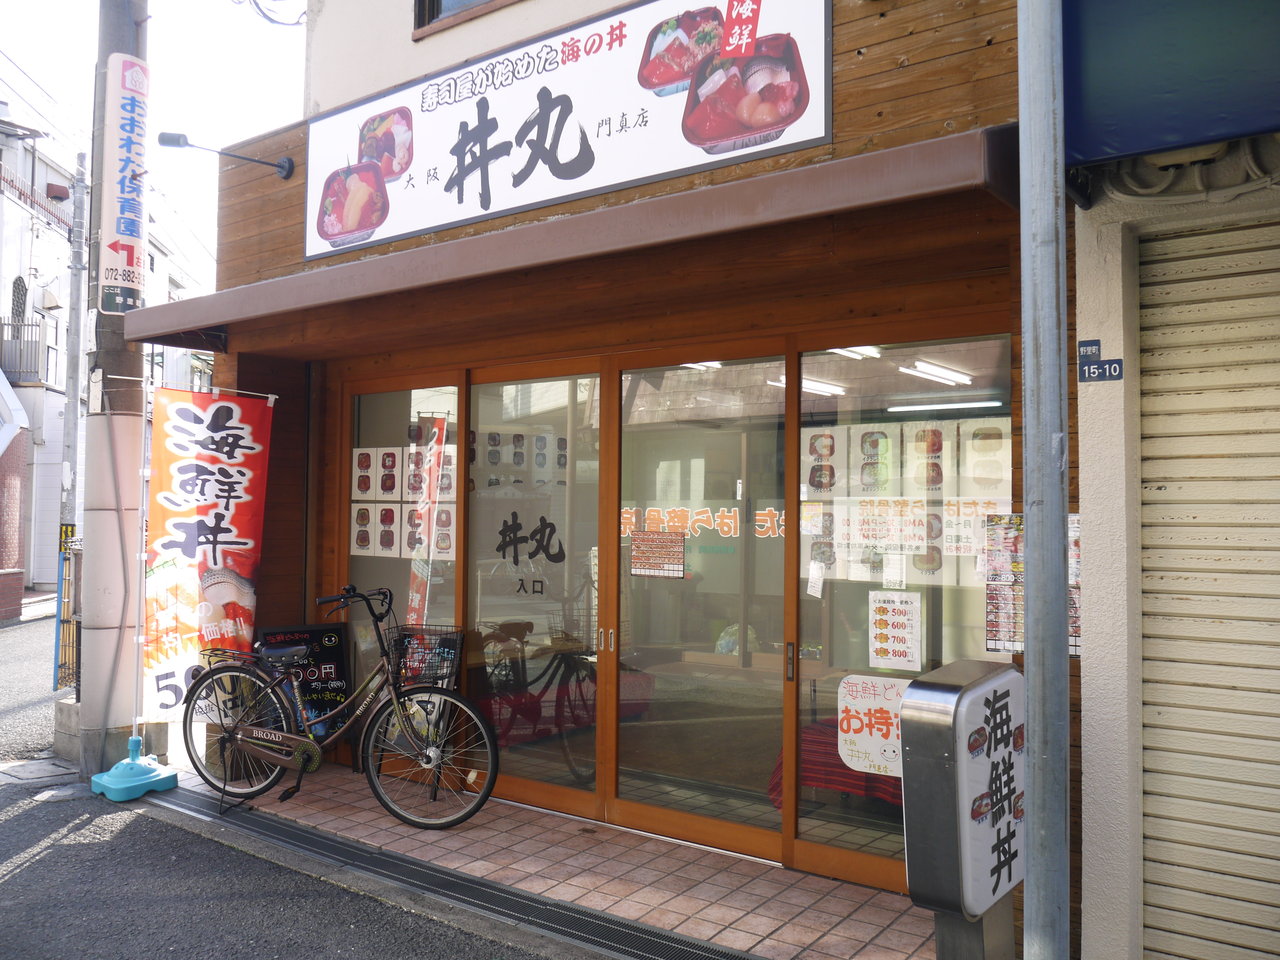 マチコロ寝屋川 大和田駅前に丼丸が開店してる 寝屋川市内にも2店舗